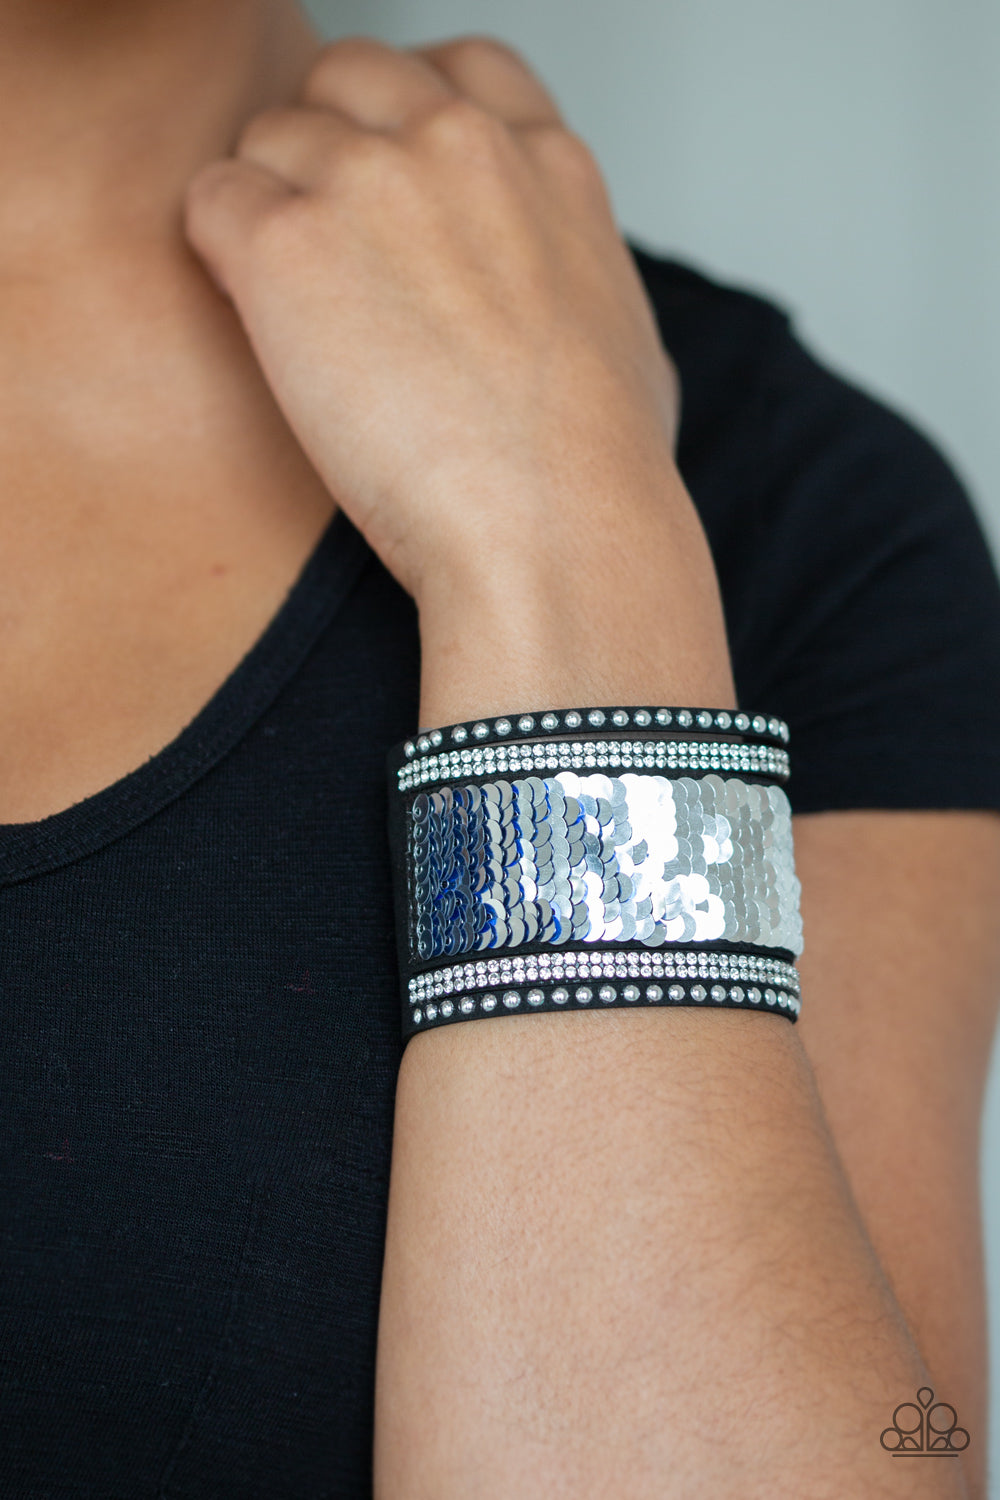 MERMAIDS Have More Fun - Blue/silver sequins wrap bracelet